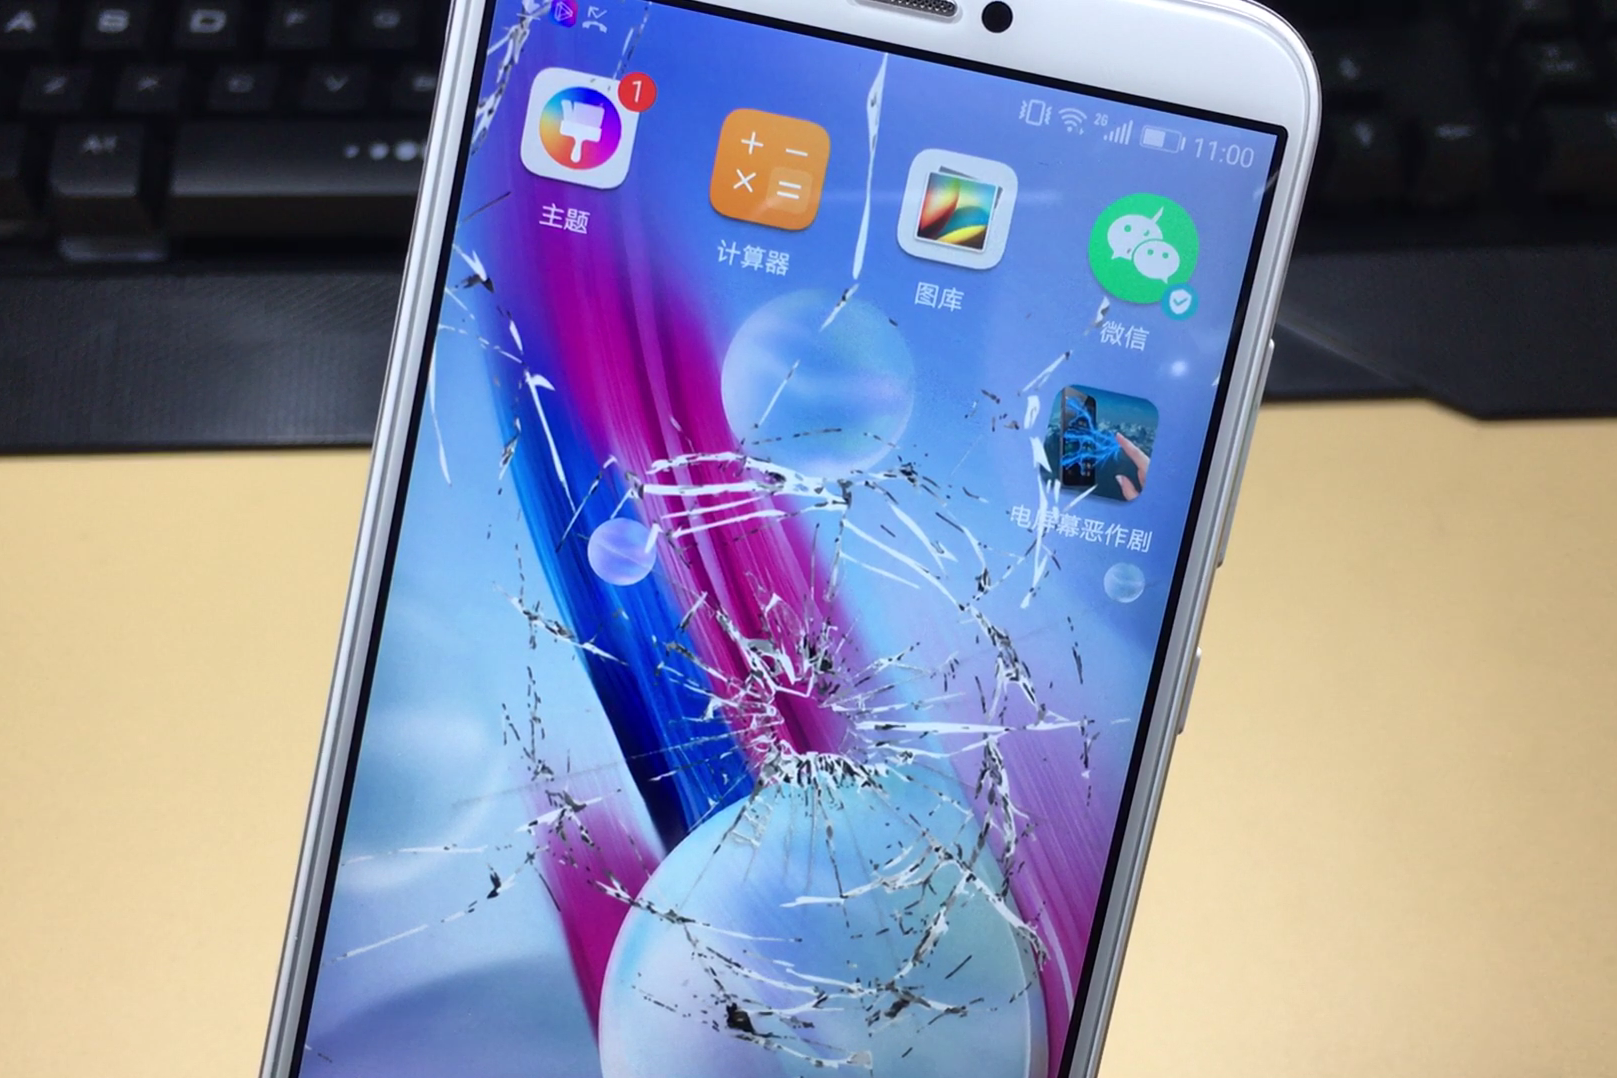 碰一下就玻璃碎的碎屏的手机壁纸,效果超逼真